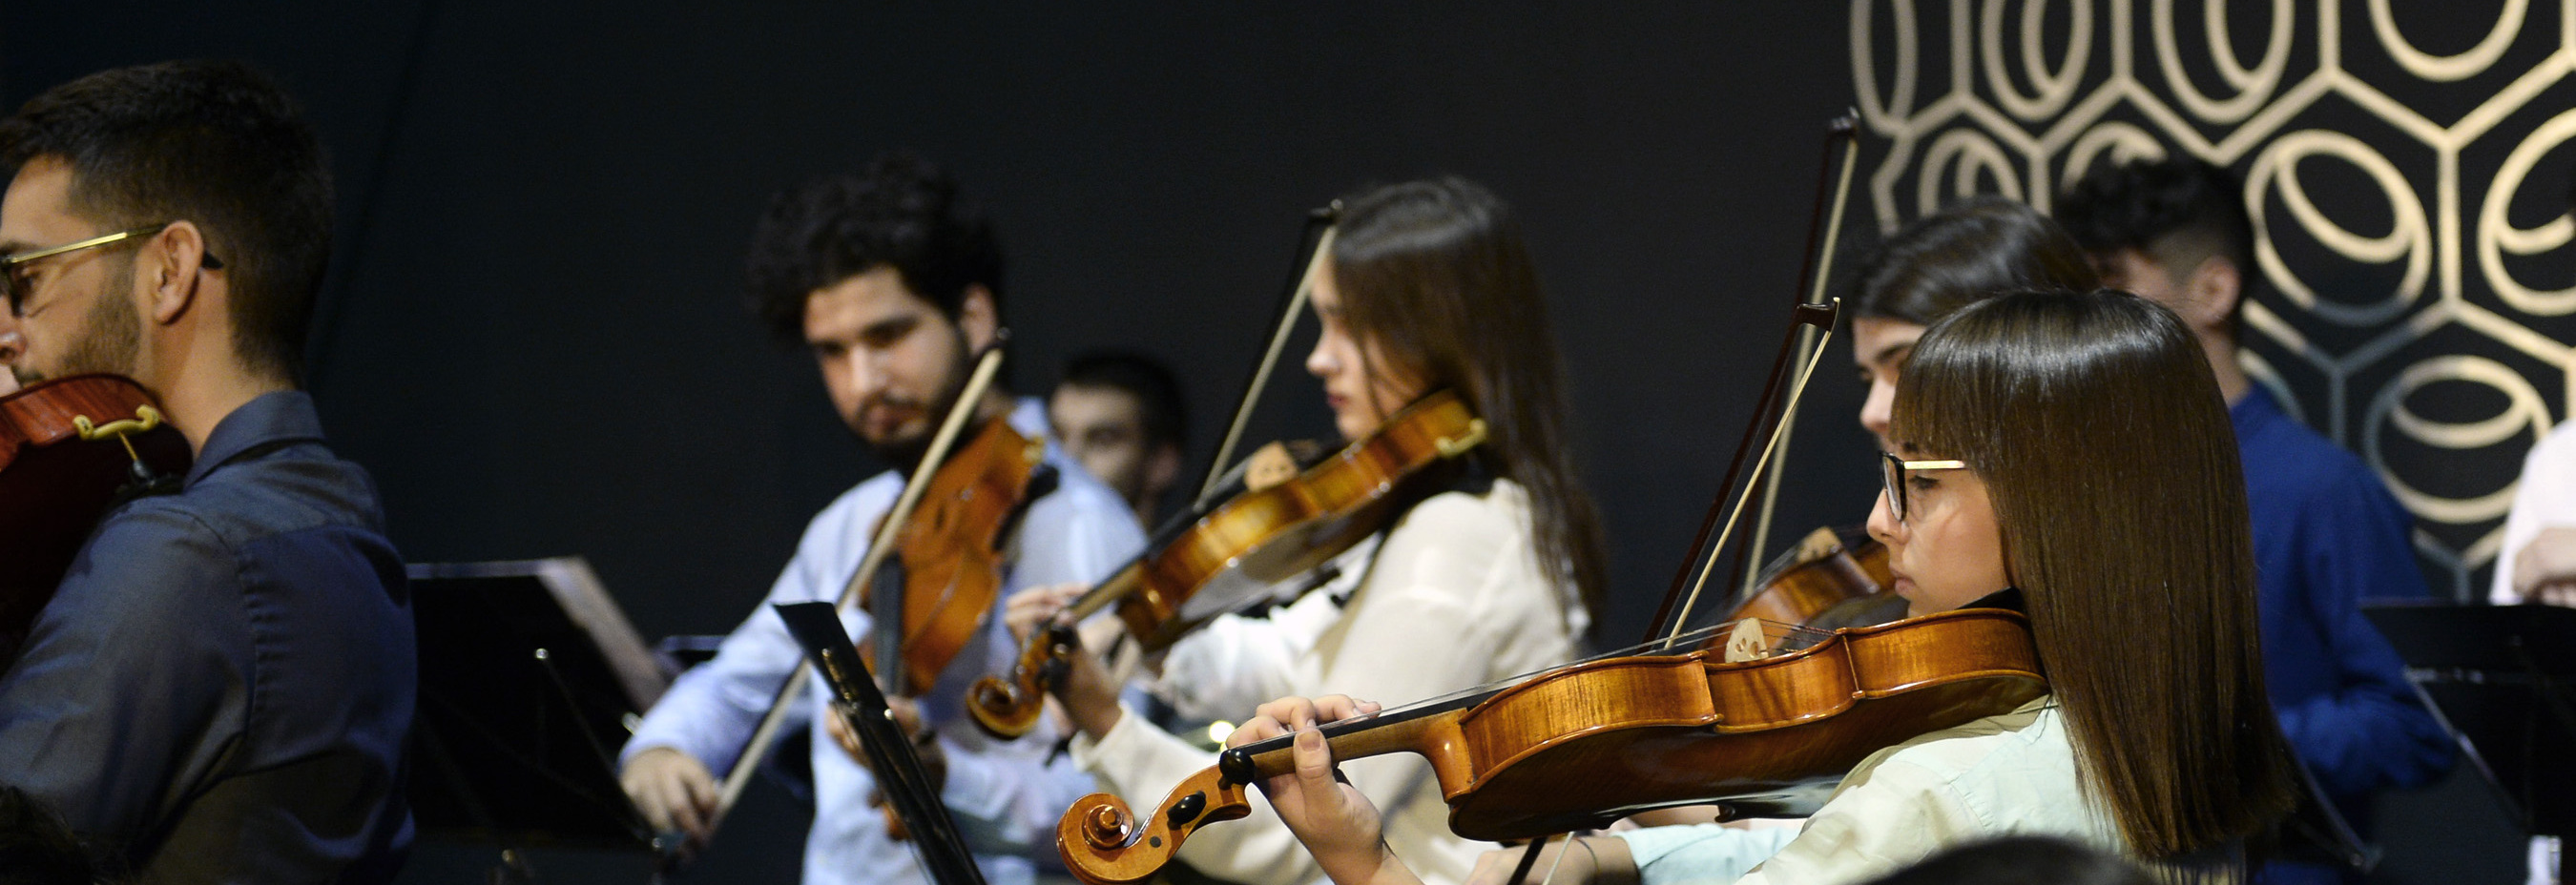 Nota de prensa - La orquesta de la Universidad de Murcia ofrece un concierto de inauguración del curso junto al violinista Pablo Albarracín